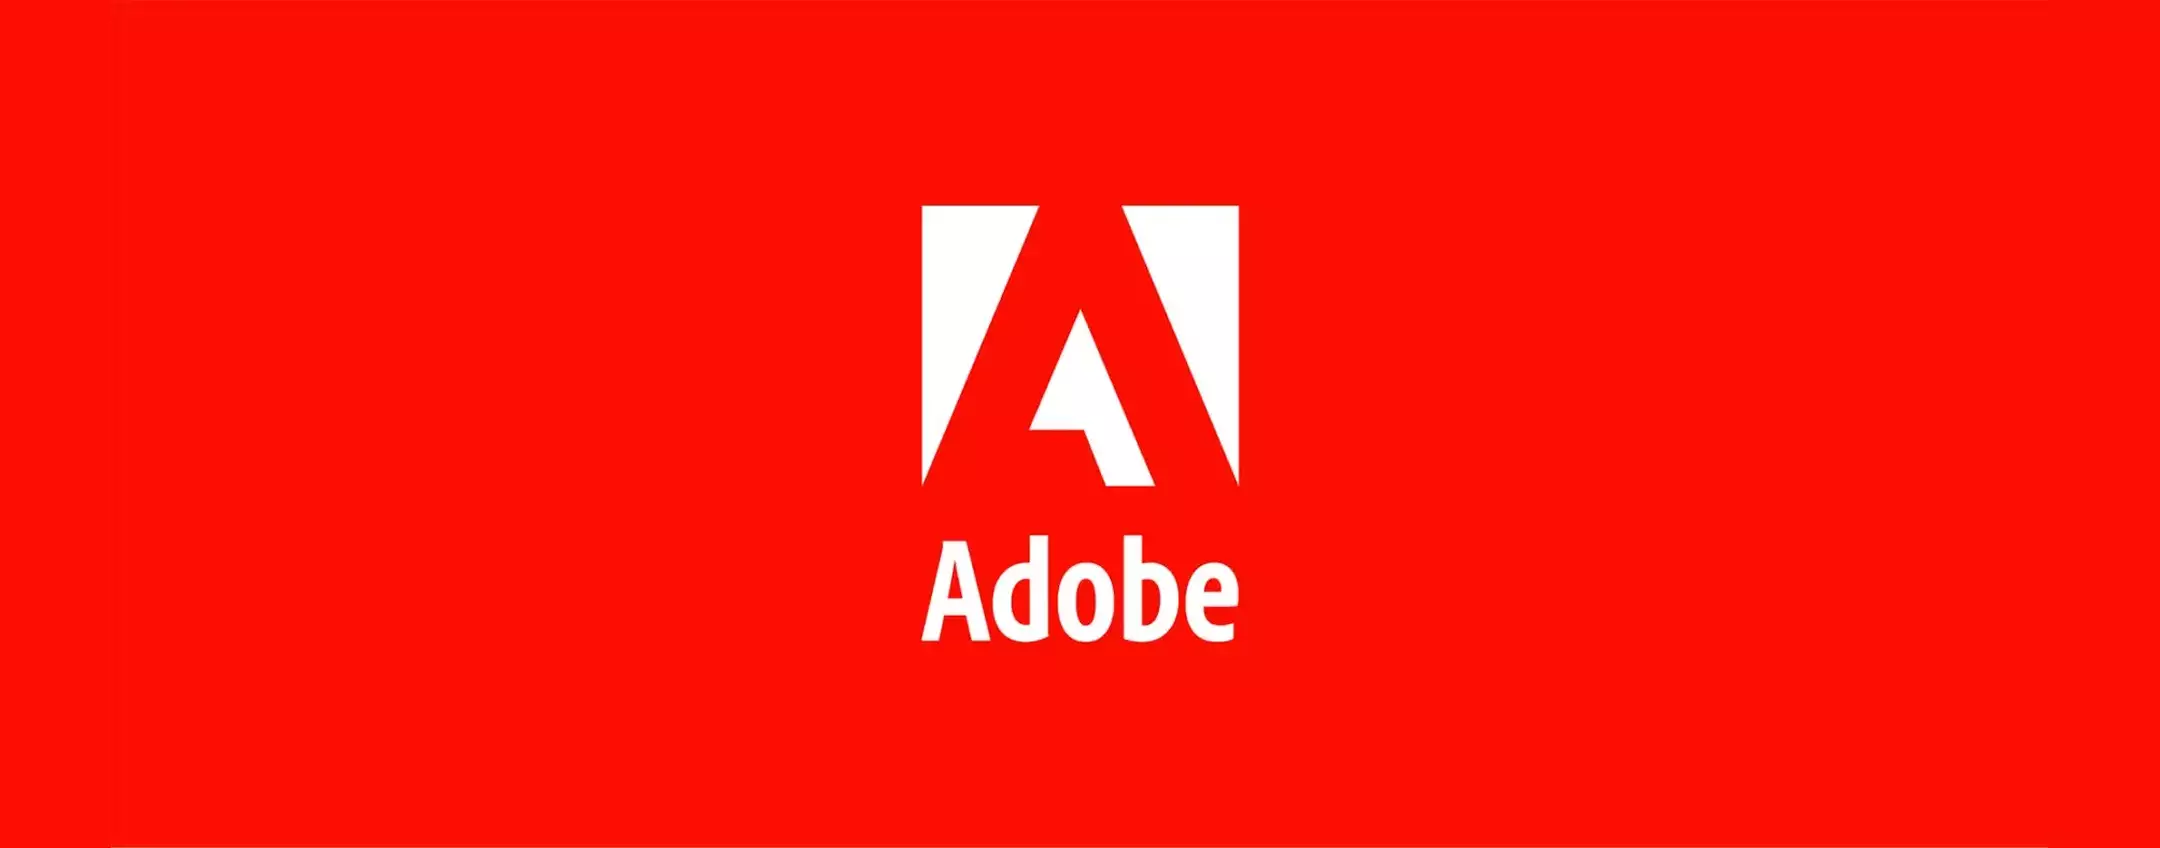 Adobe denunciata negli USA per pratiche ingannevoli